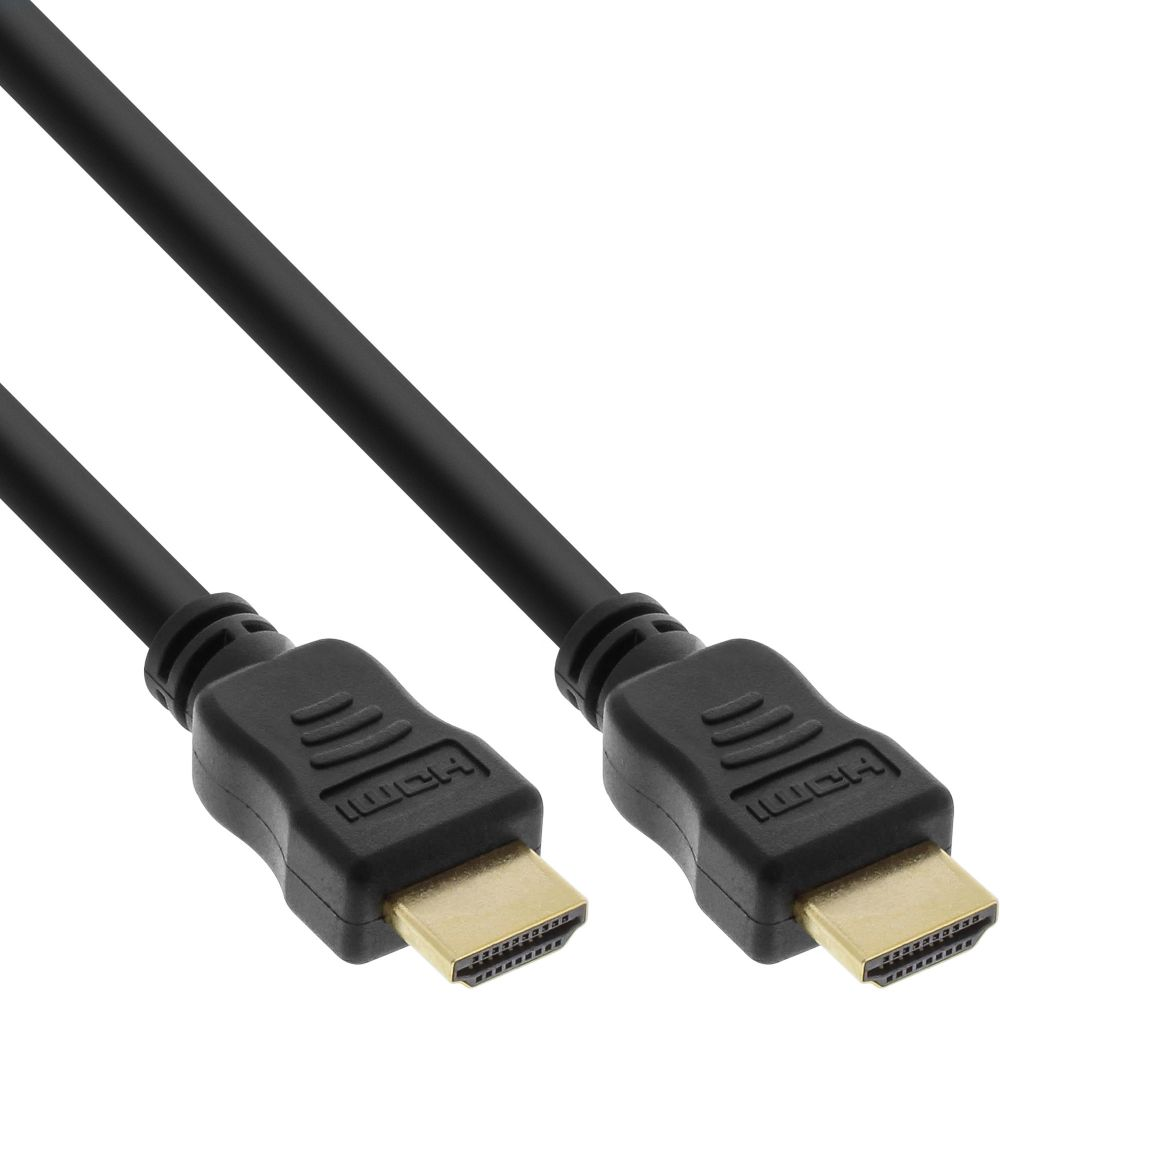 30cm High Speed HDMI-Kabel mit Ethernet